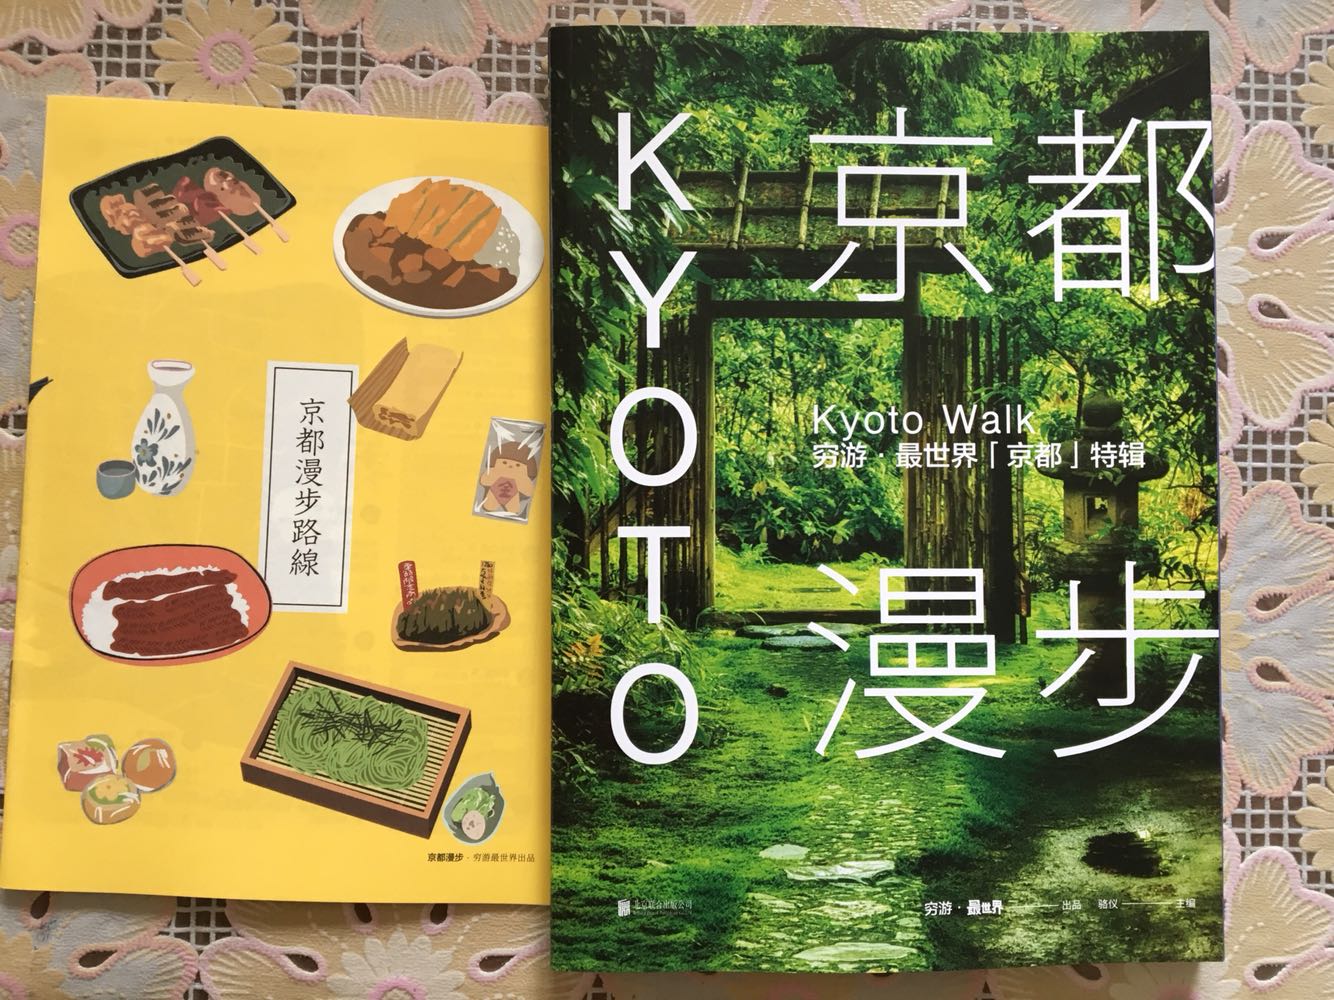 喜欢看游记，用别人的眼睛看你到不了的地方。这本书翔实的介绍了在京都游玩的方方面面，如果有机会去京都，一定拿它做向导。